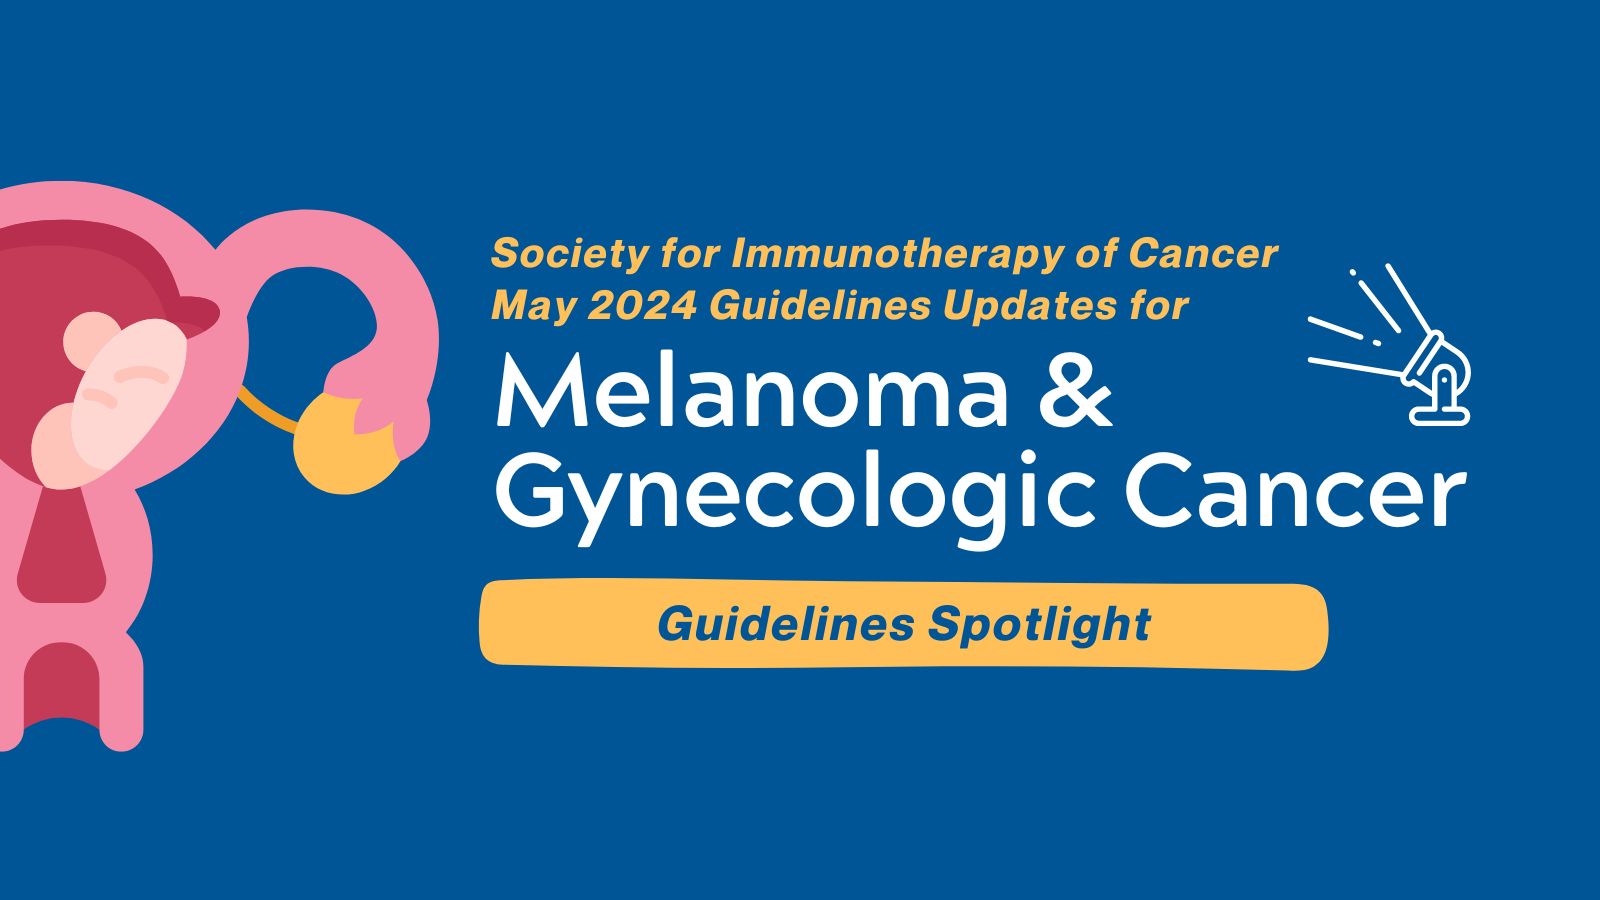 Guidelines Spotlight - Melanoma & Gynecologic Cancer